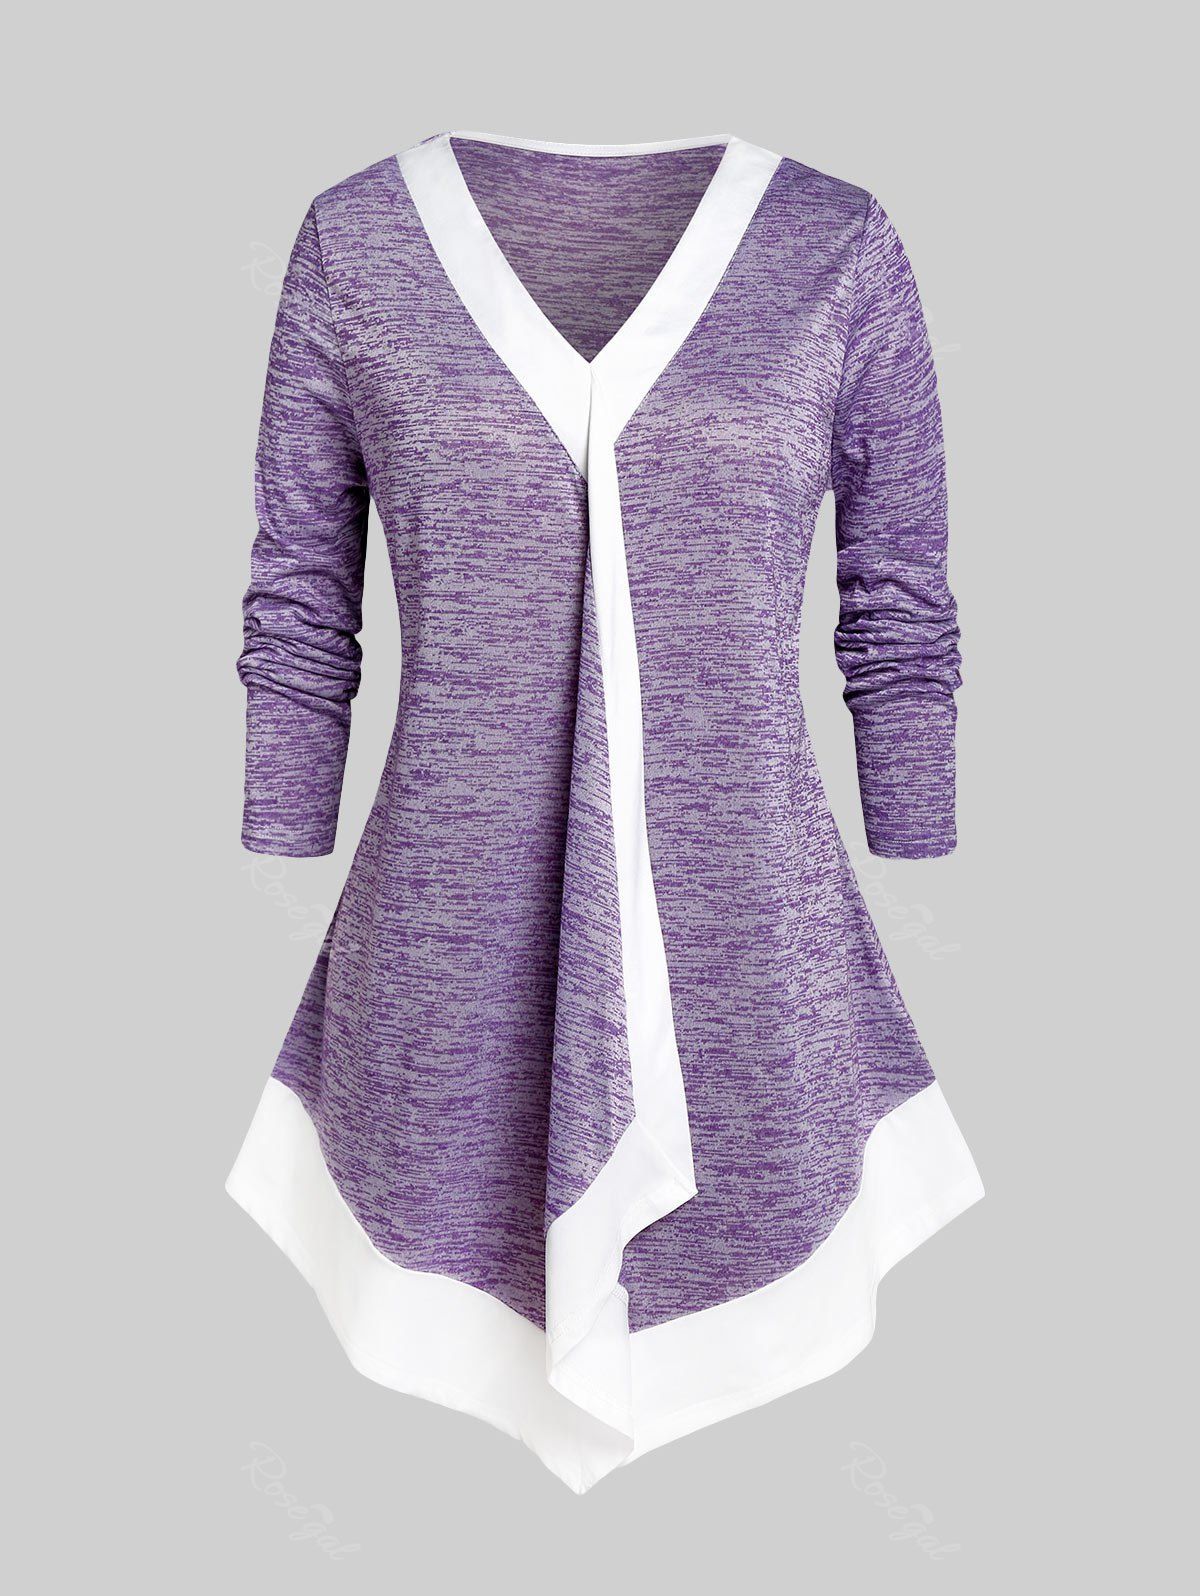 T-shirt Irrégulier Teinté à Ourlet Contrasté de Grande Taille Violet clair 2X